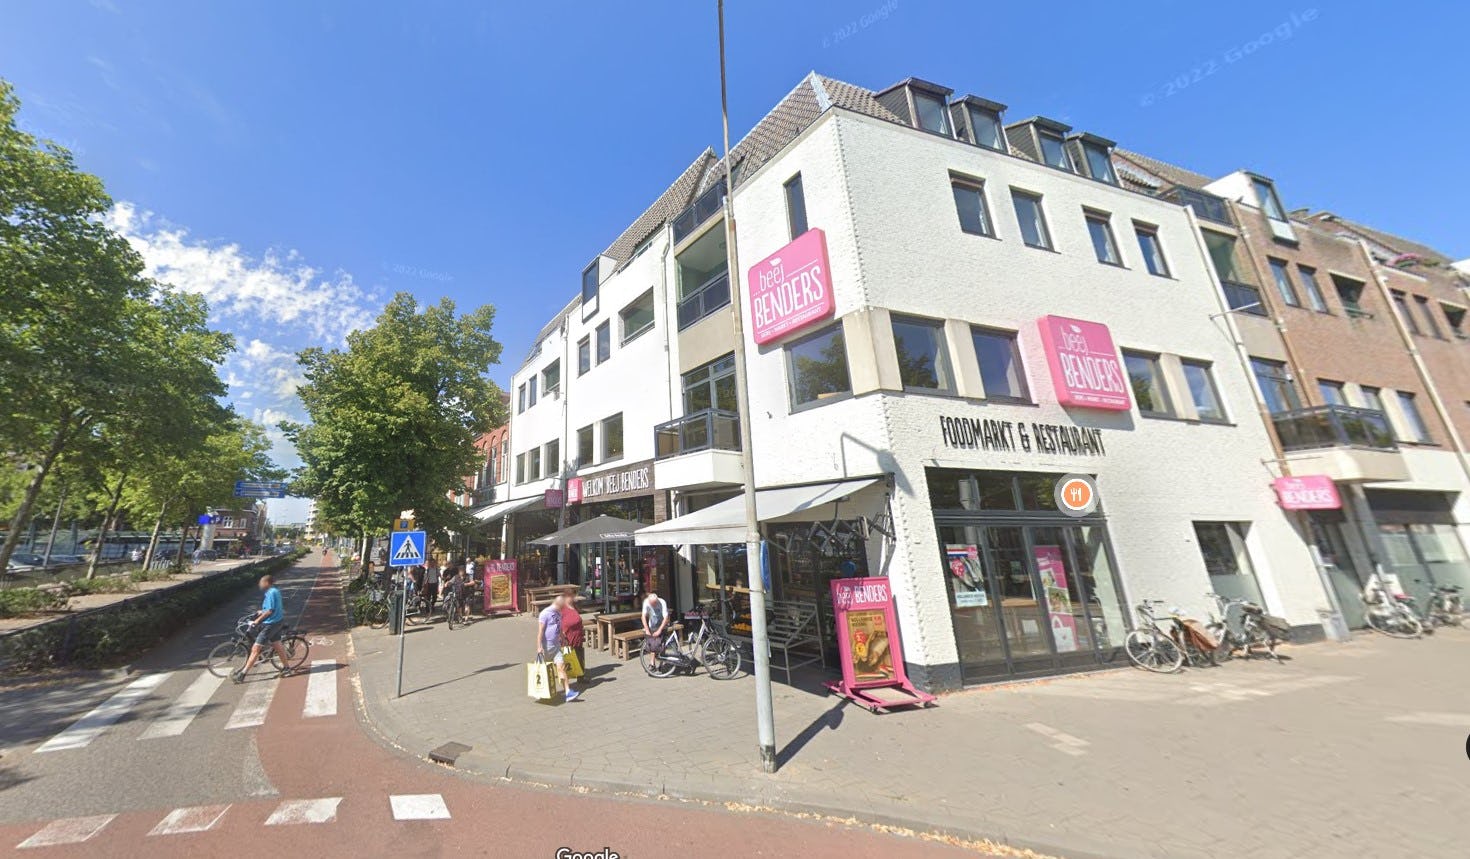 Het gebouw waar Beej Benders gevestigd is in Venlo. Foto: Google Maps